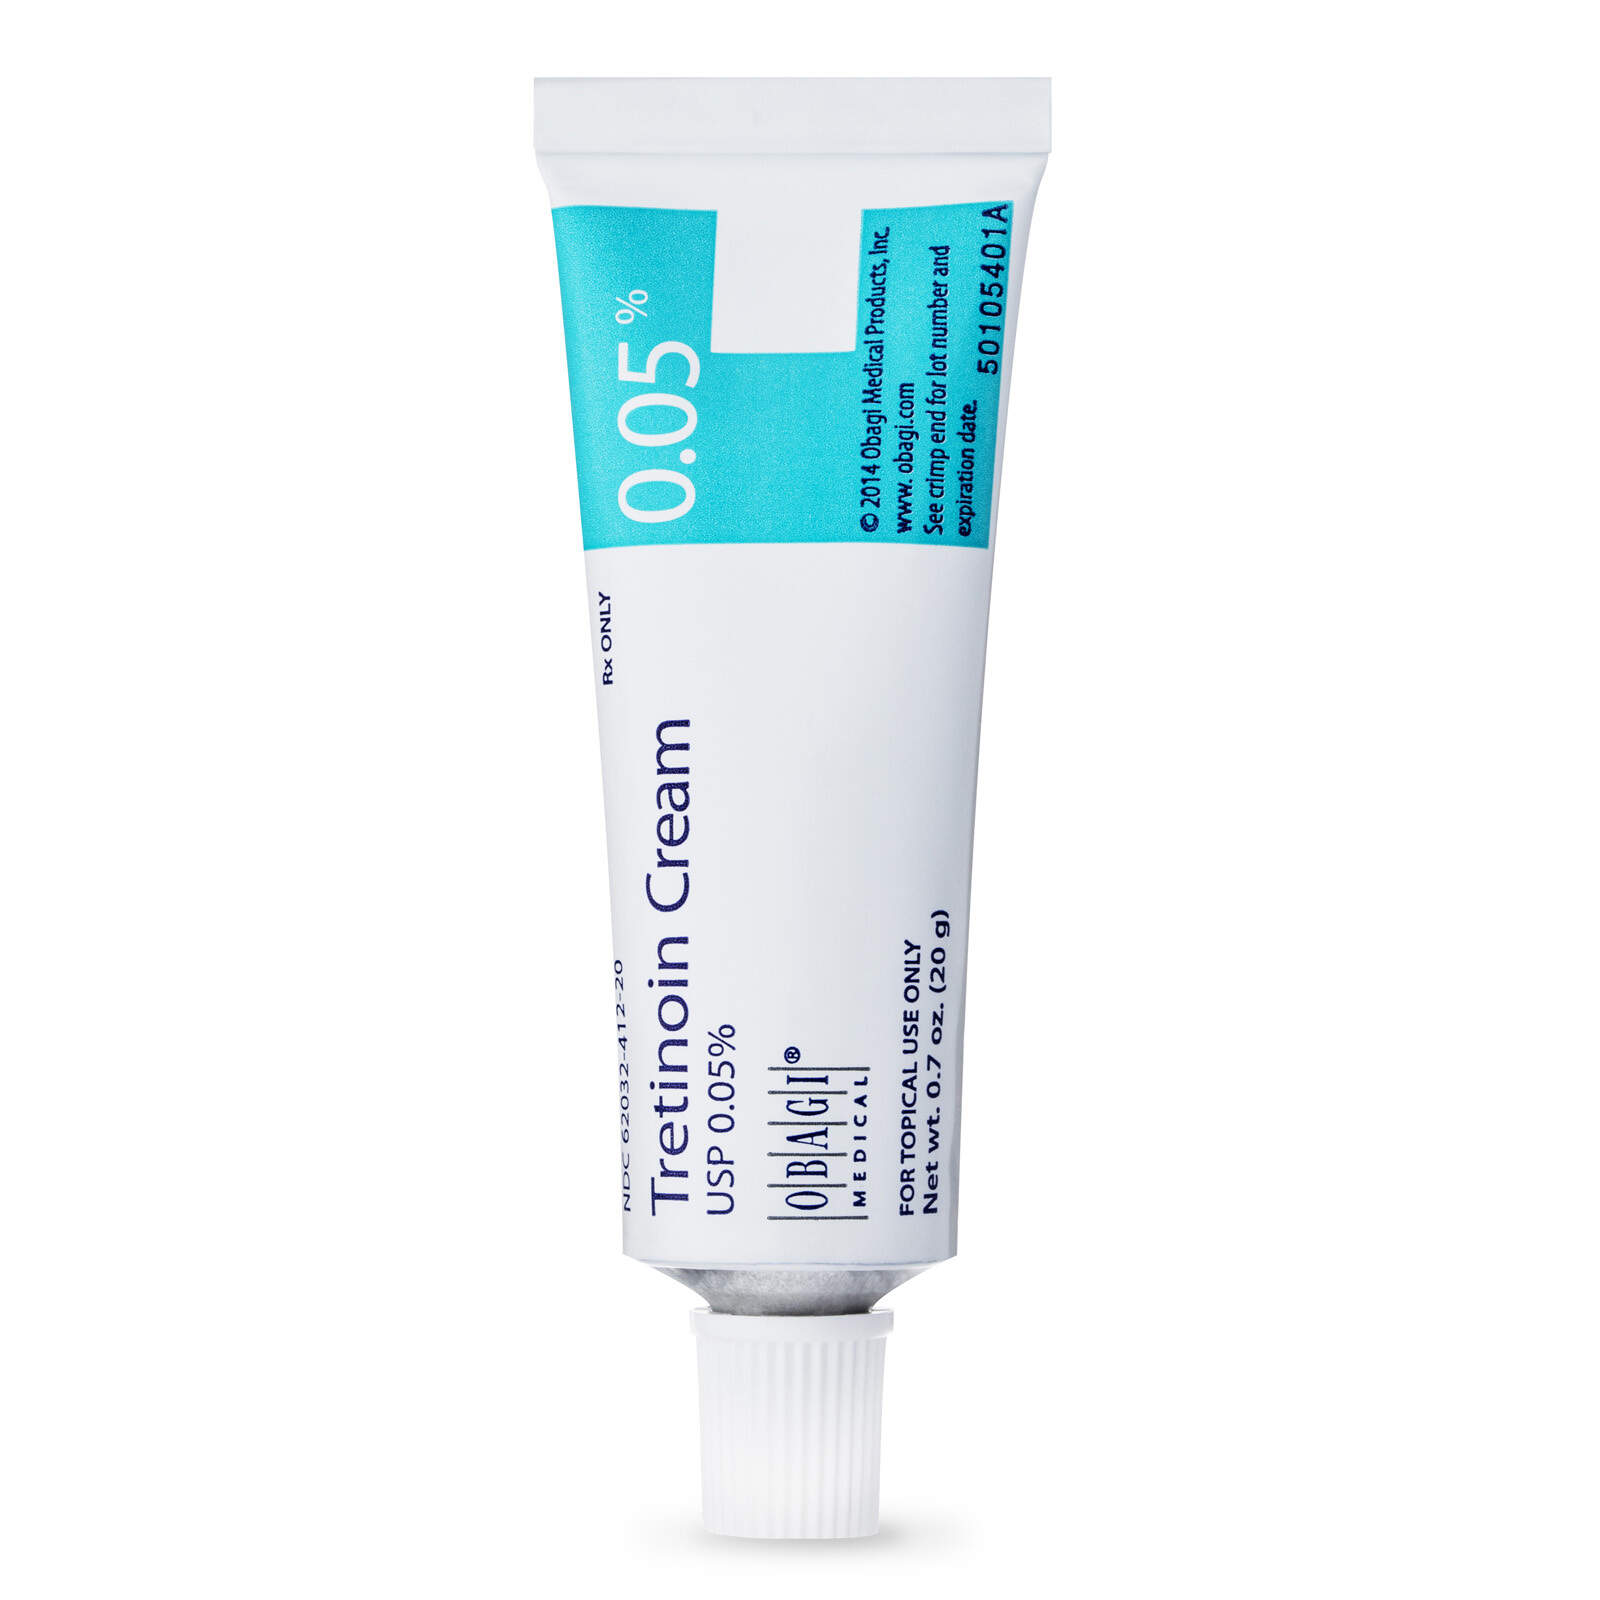 Obagi Tretinoin Cream 0.05% | Acne Treatment Cream | Obagi